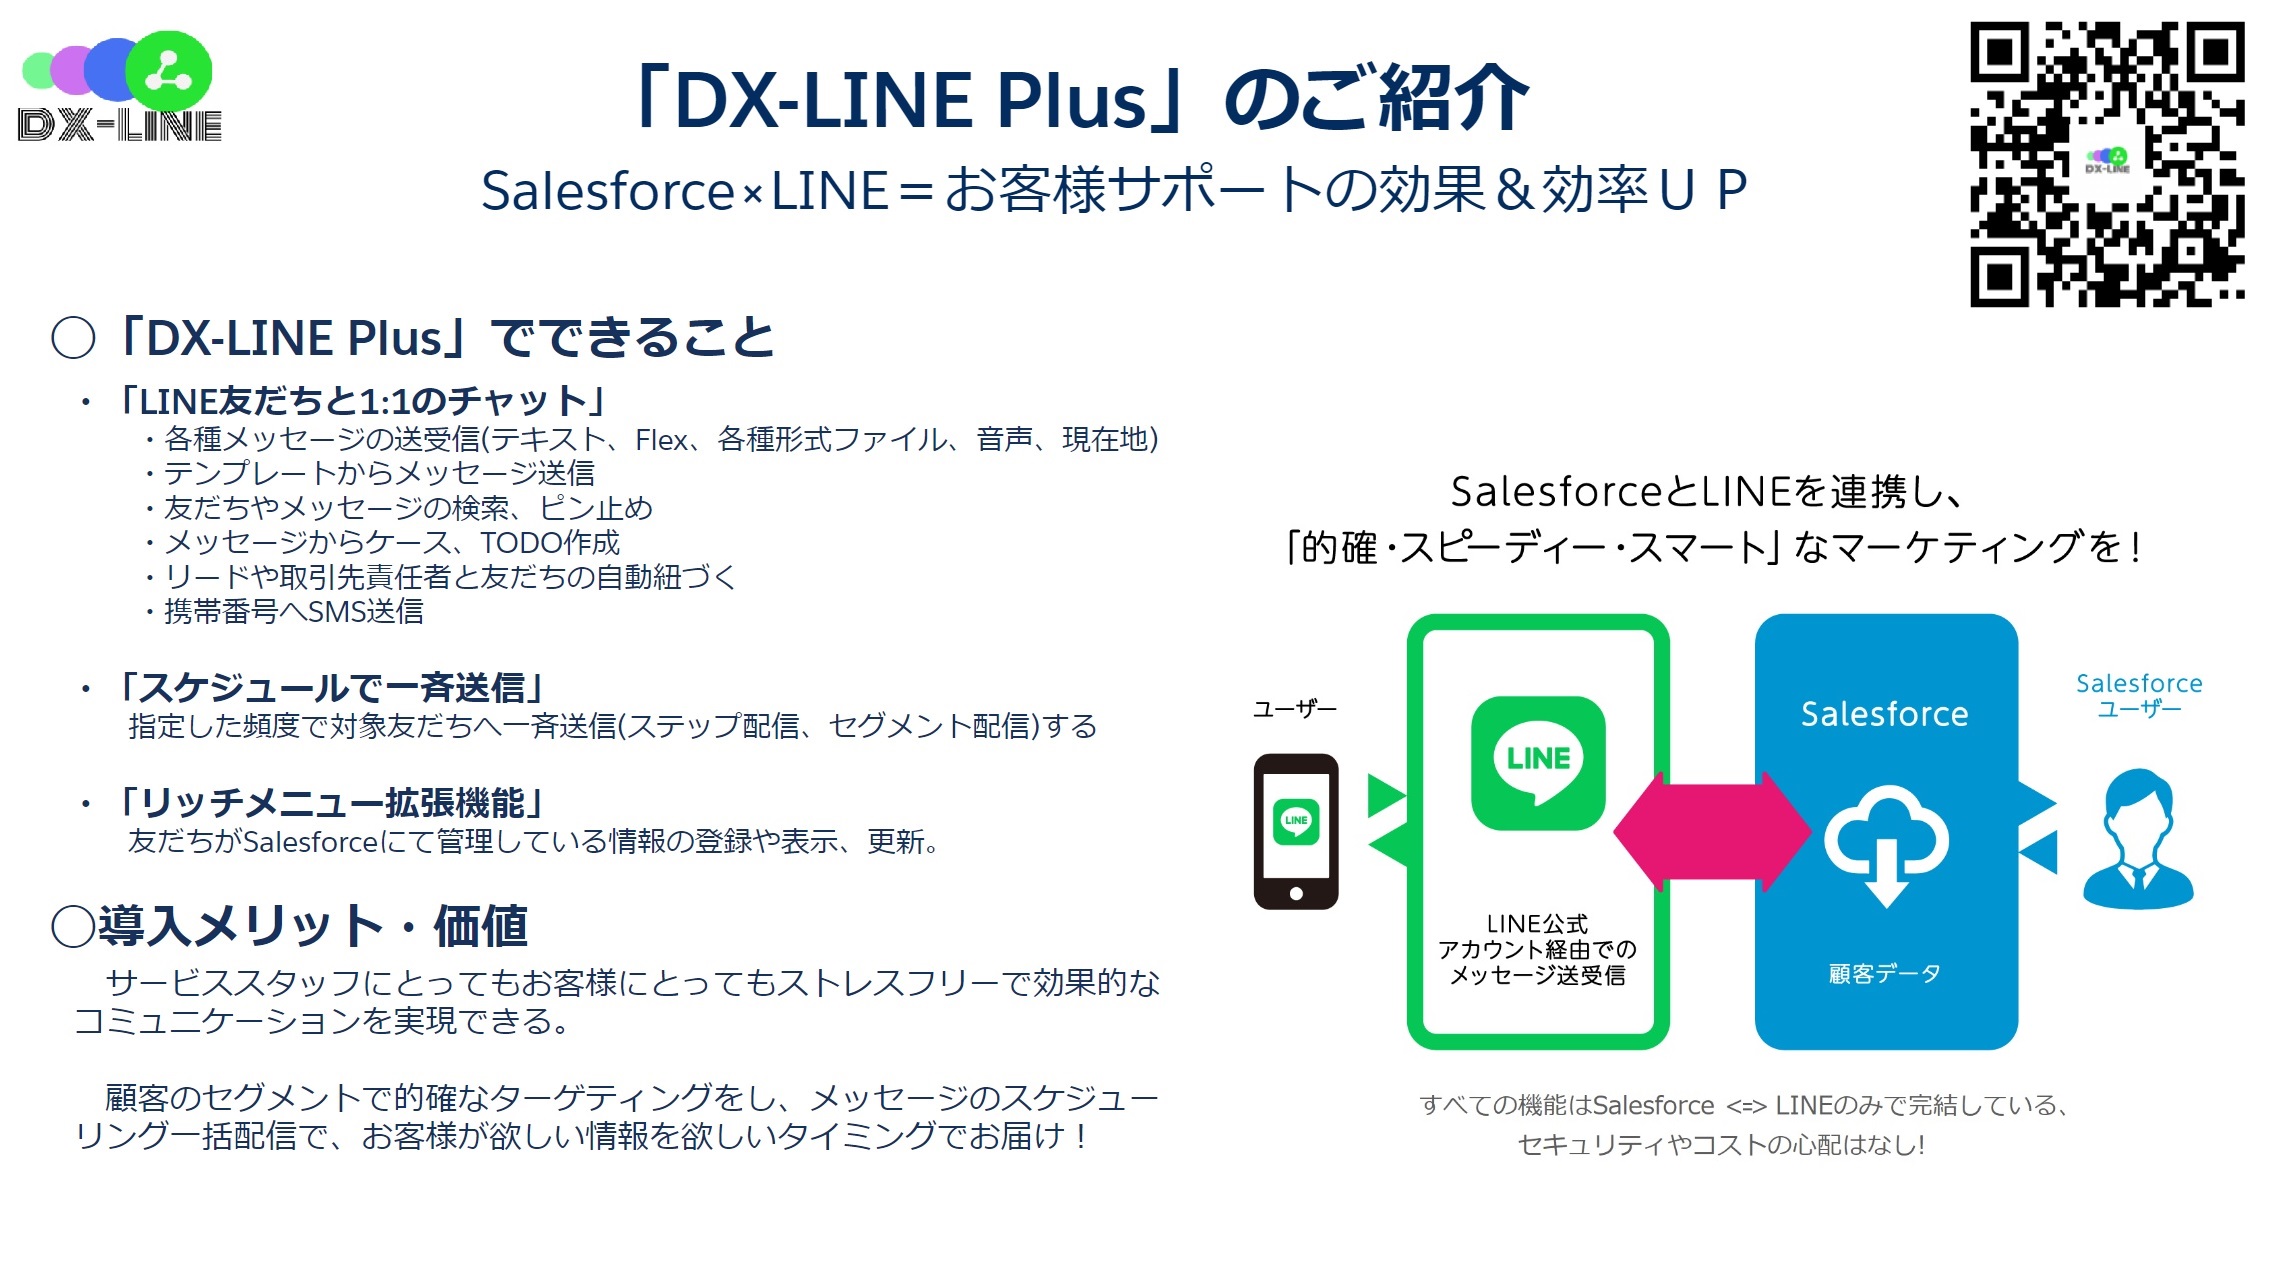 株式会社ベターフューチャー DX-LINE